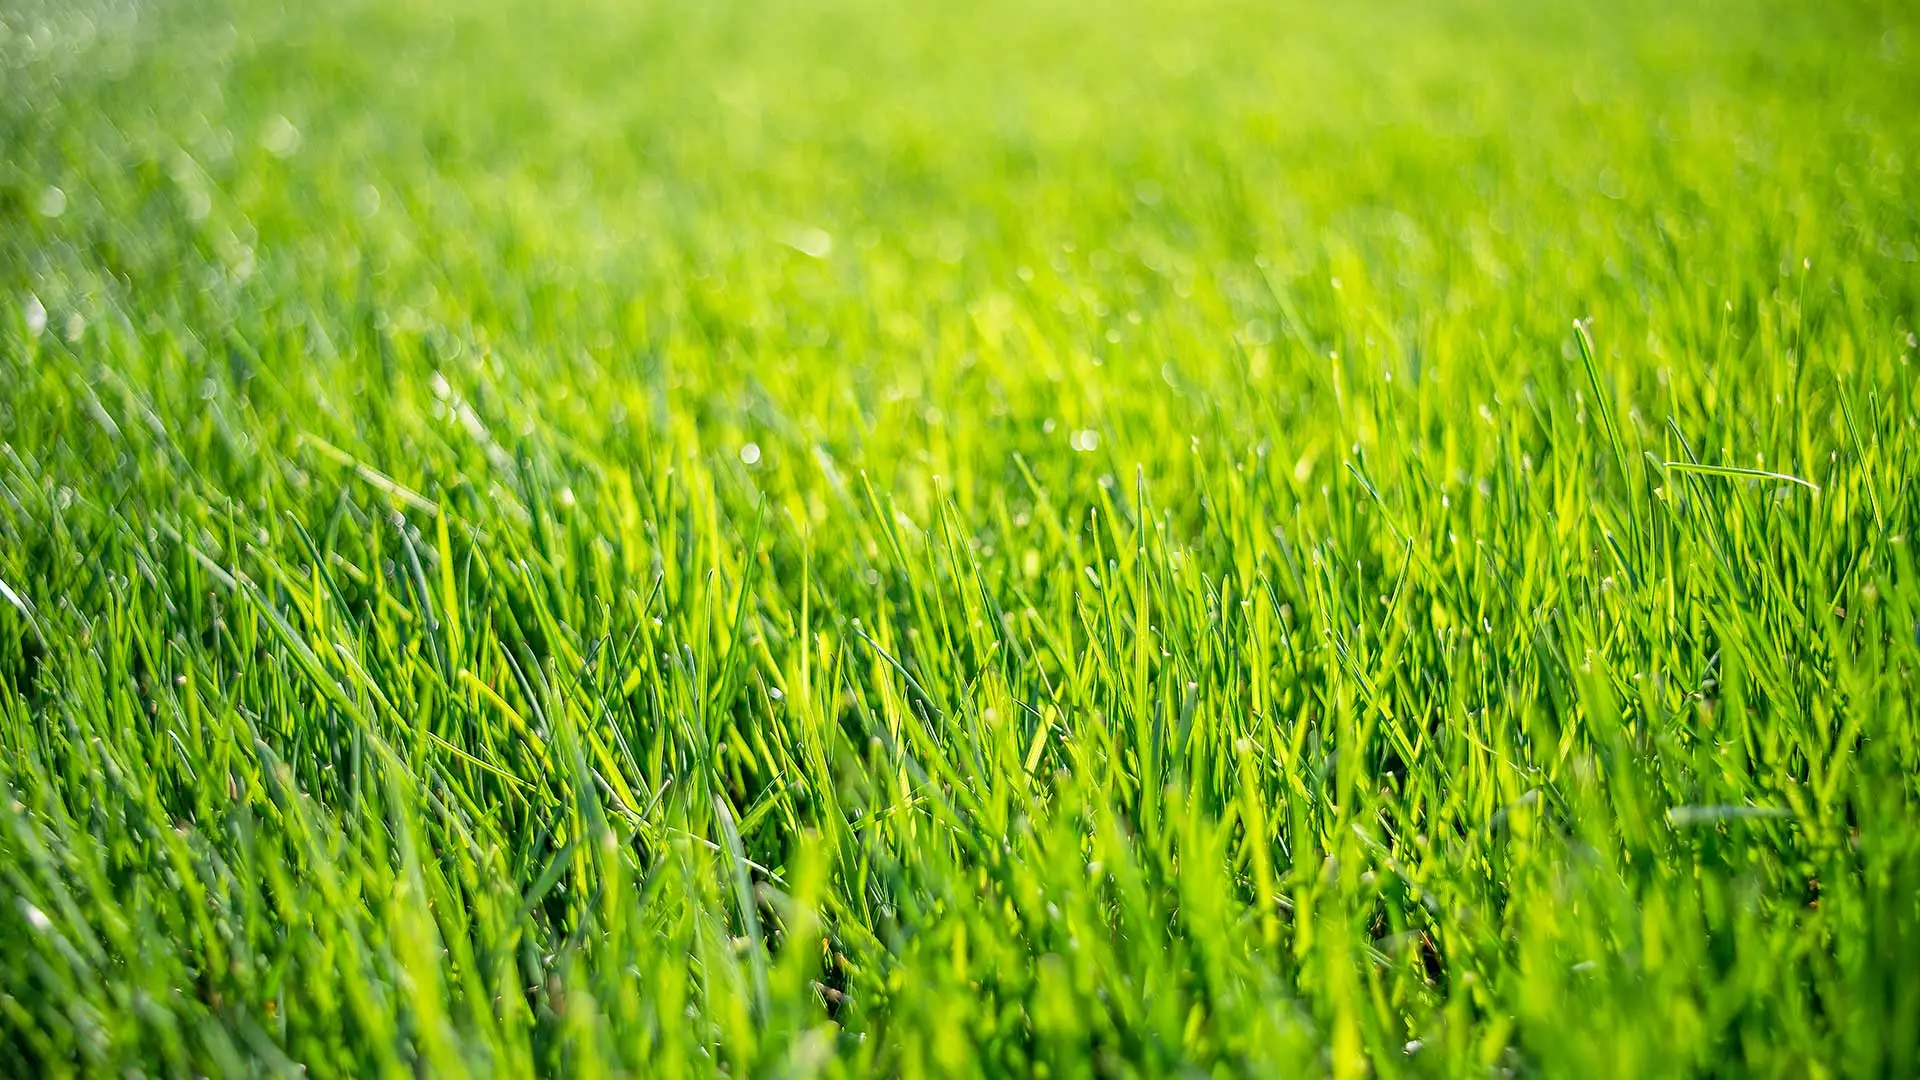 Beautiful, green lawn grass in the sunlight near Carmel, Indiana.